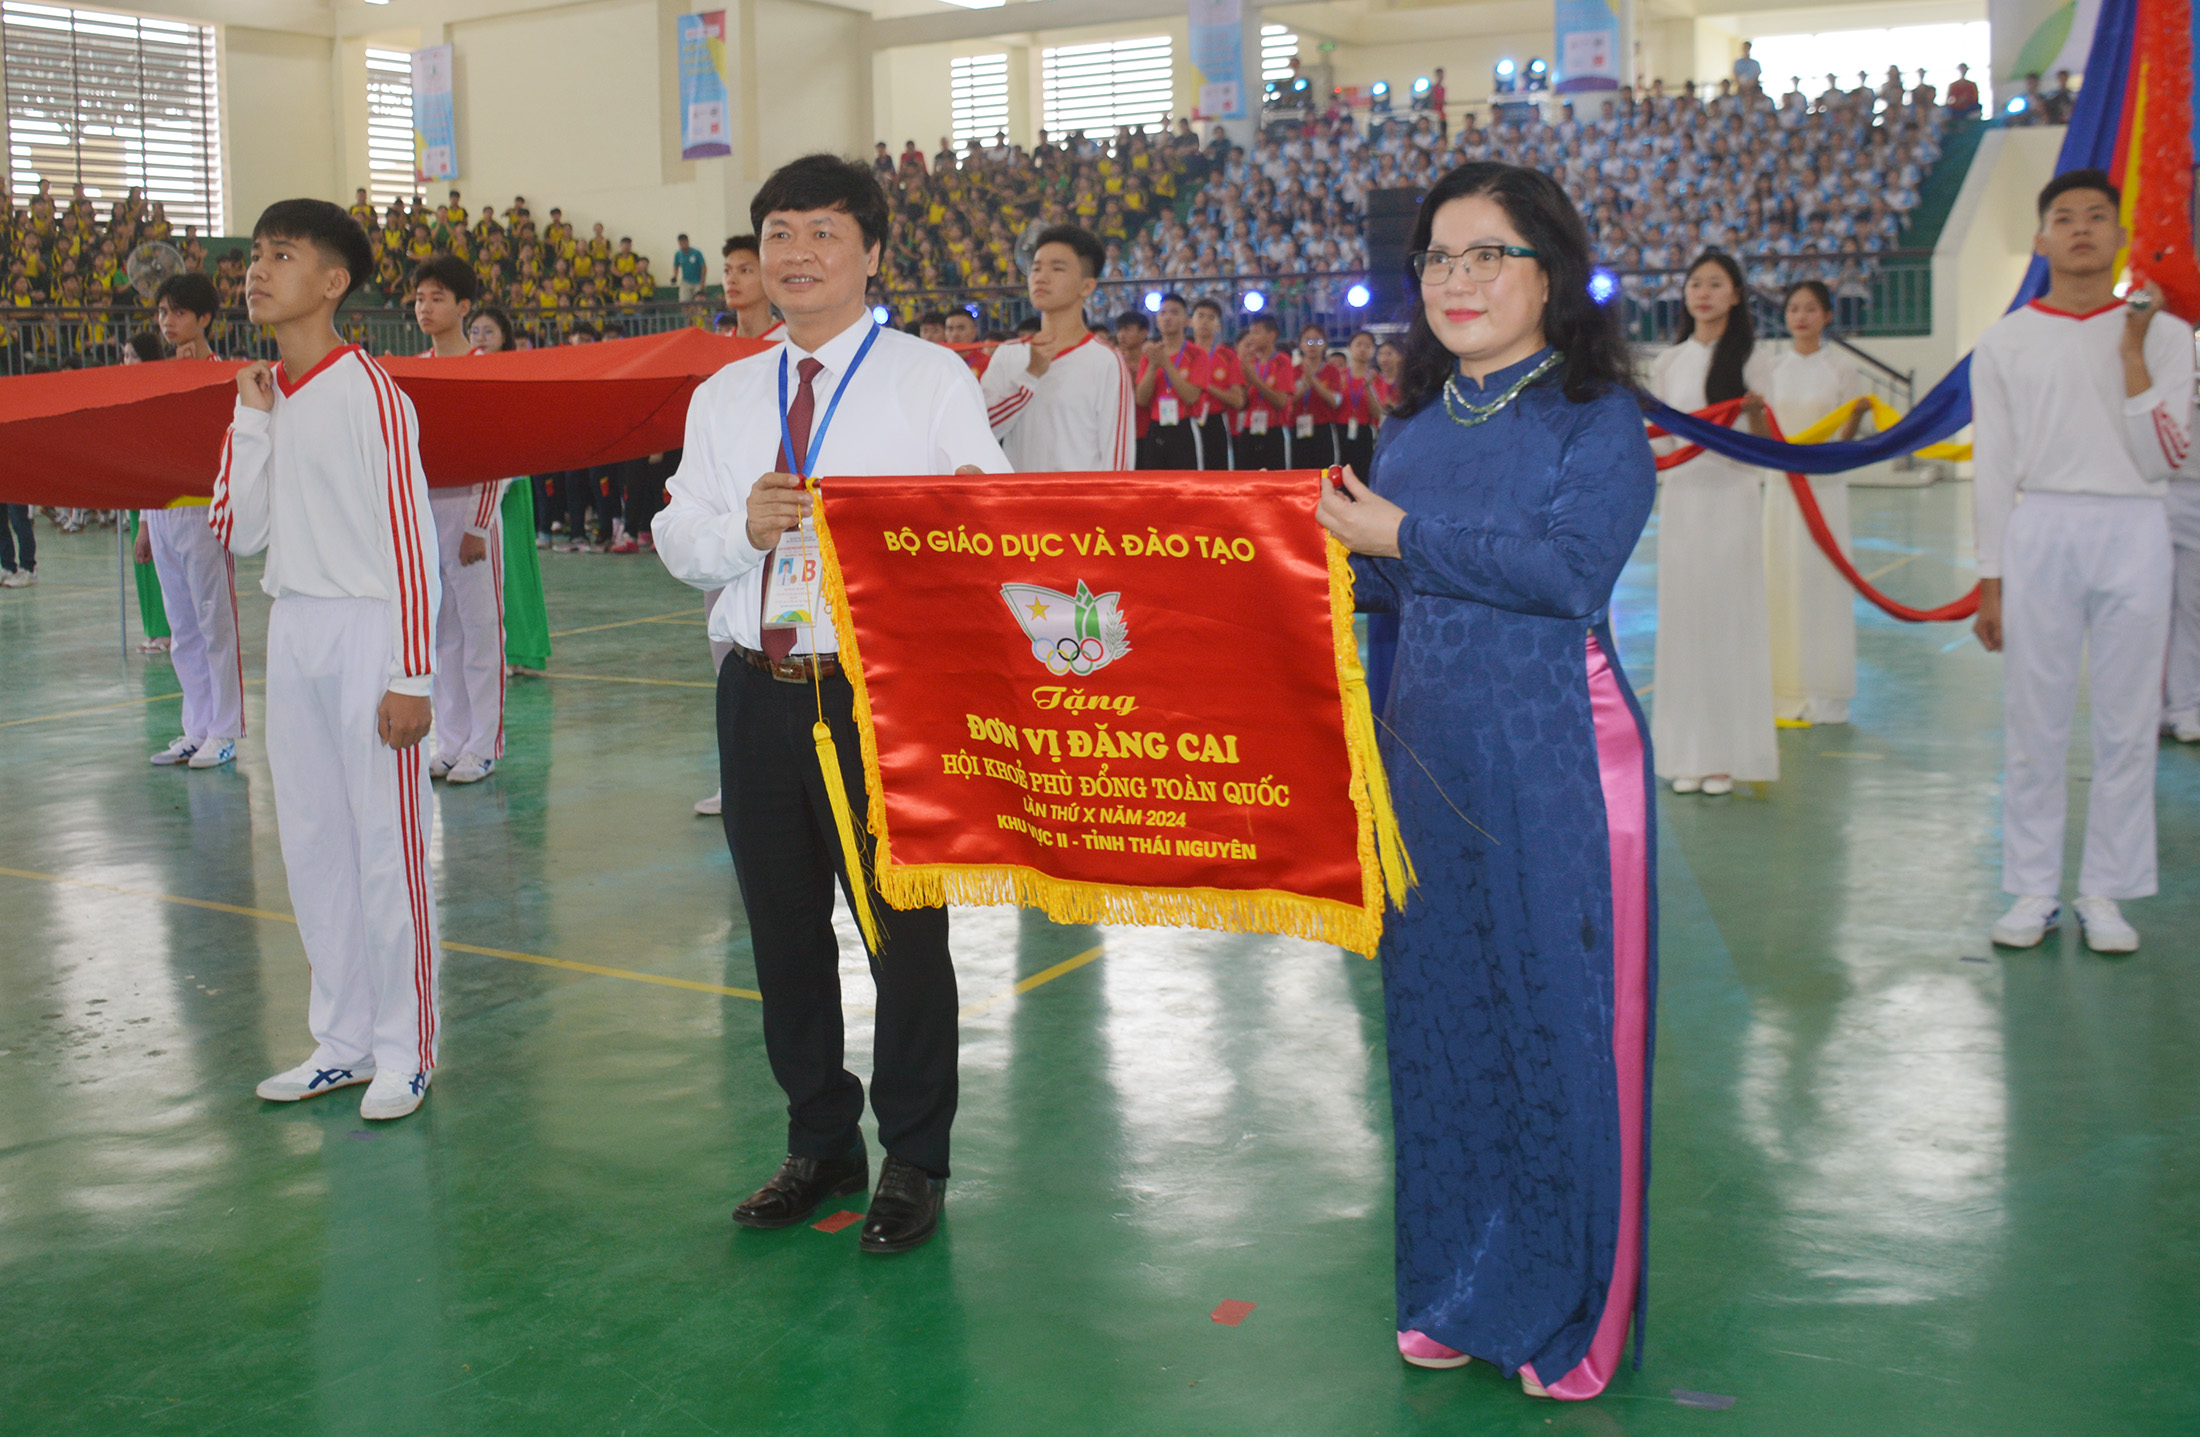 Thứ trưởng Bộ Giáo dục và Đào tạo Nguyễn Thị Kim Chi tặng Cờ lưu niệm cho lãnh đạo Sở Giáo dục và Đào tạo Thái Nguyên